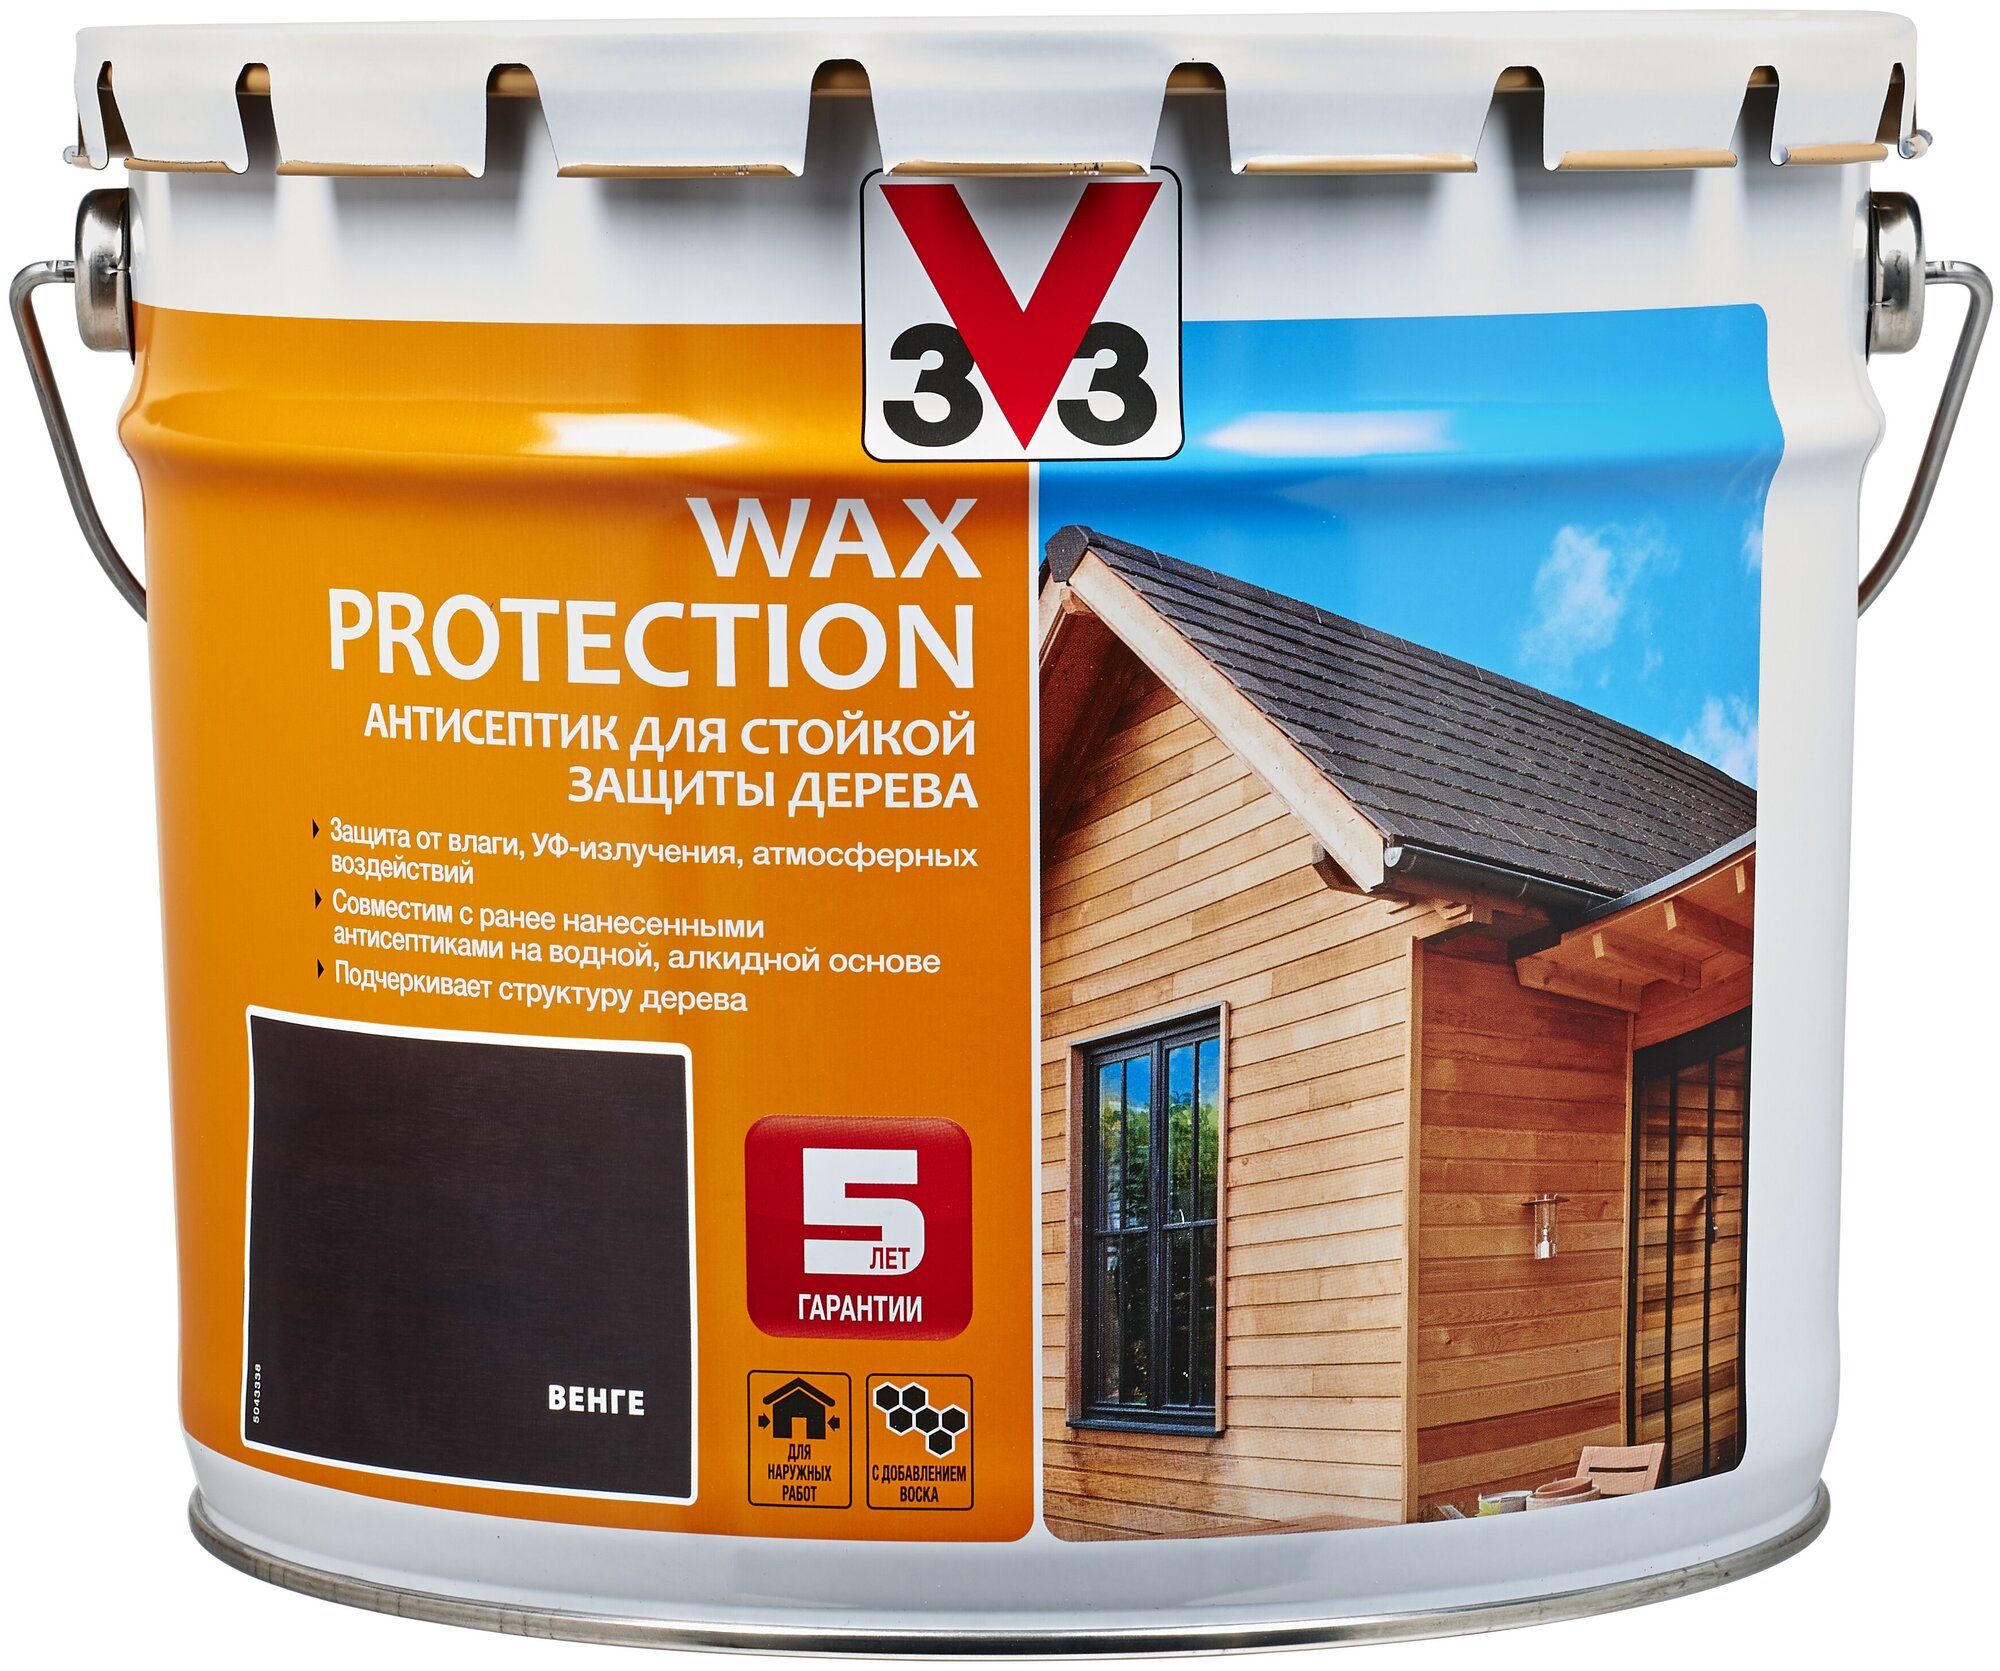 Пропитка V33 антисептик для стойкой защиты дерева Wax Protection